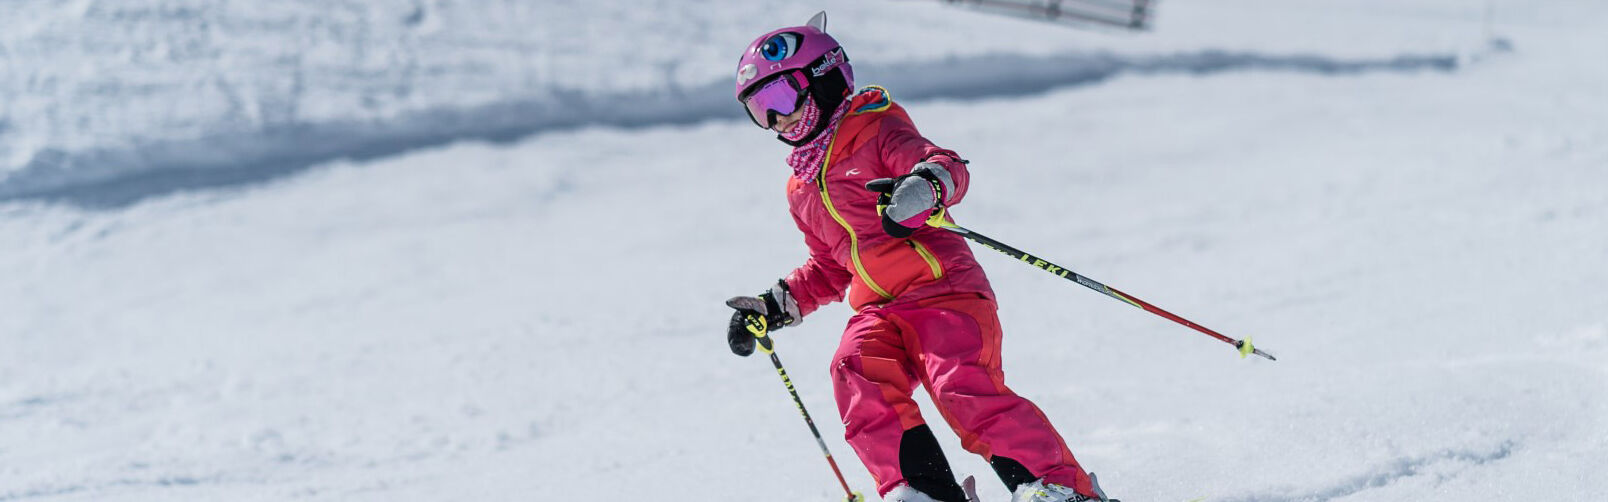 Skischule Flachau - speziell ausgebildete Kinderskilehrer